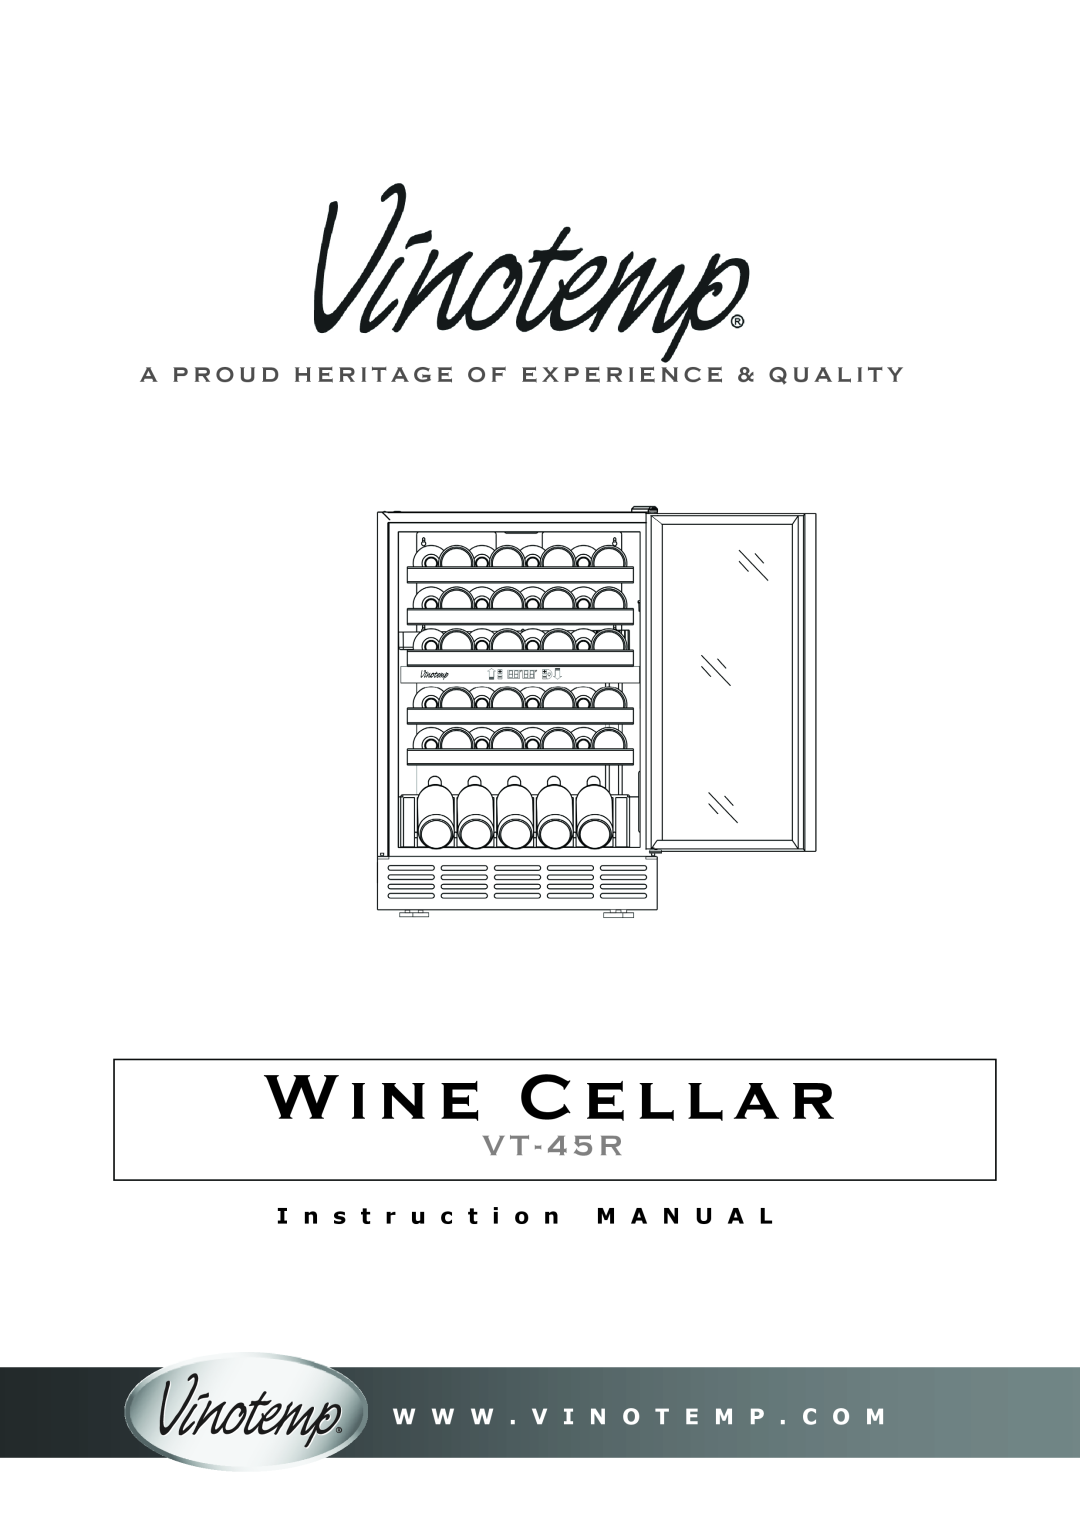 Vinotemp VT-45R instruction manual Wine Cellar, V T - 4 5 R, W W W . V I N O T E M P . C O M 